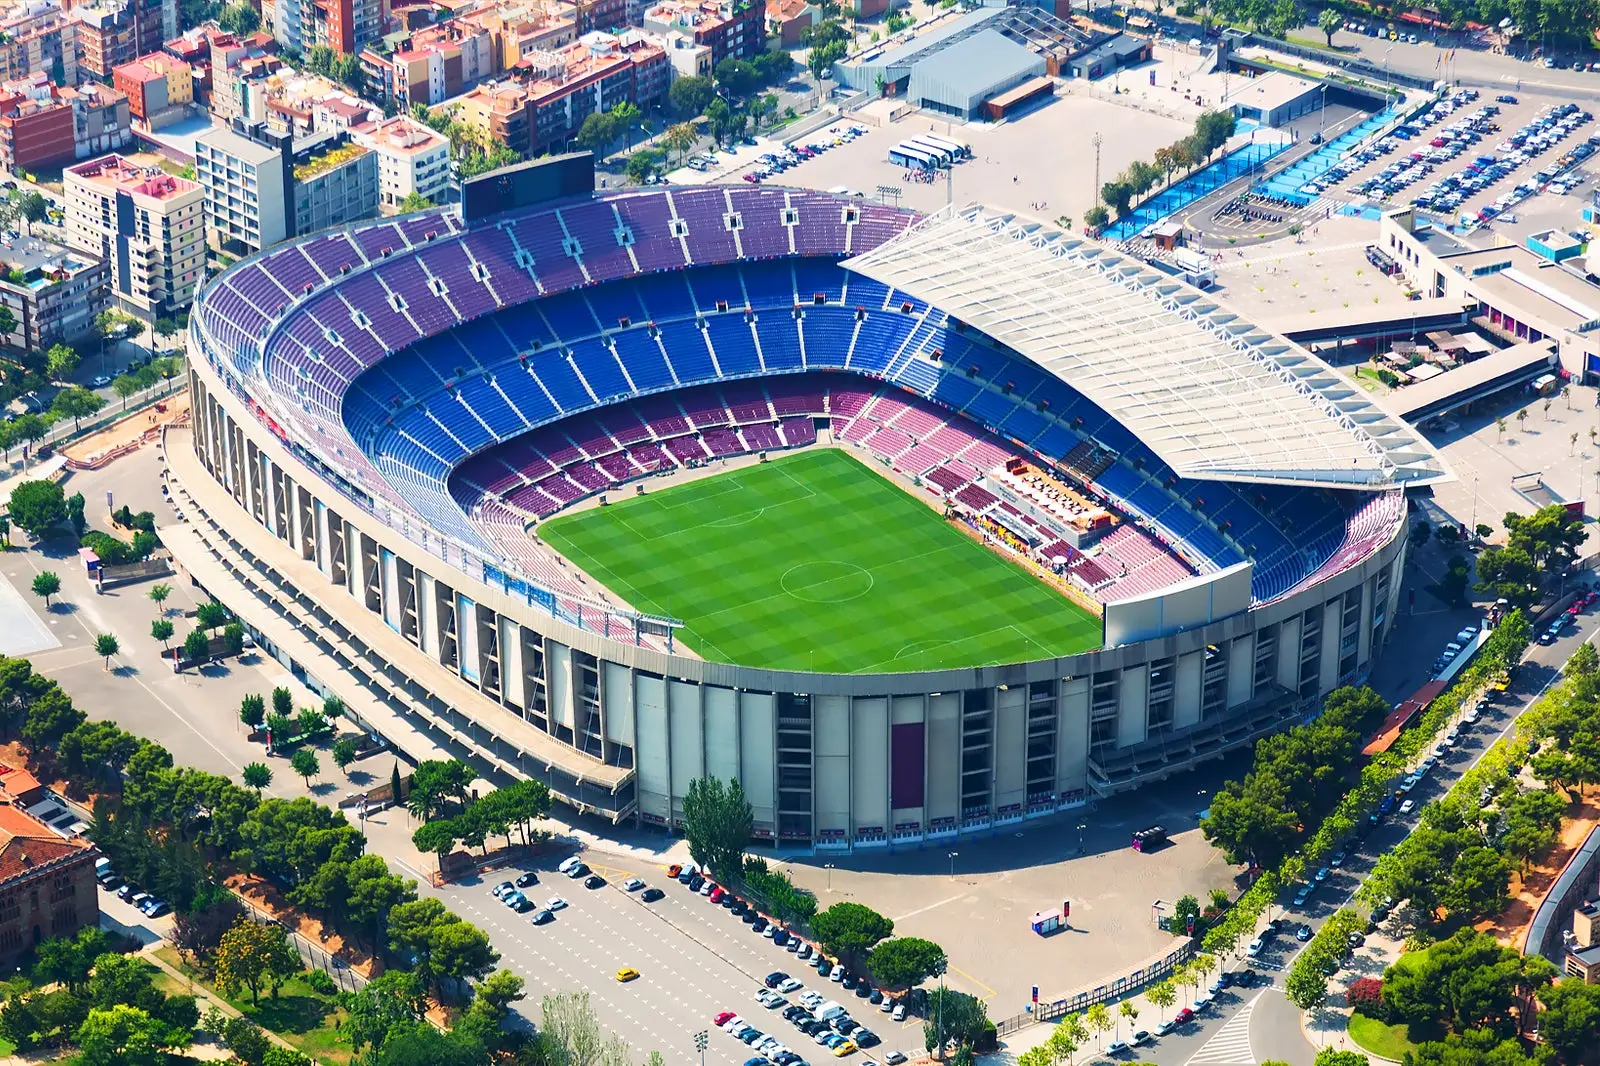 Sân vận động Camp Nou - Biểu tượng kiến trúc và bóng đá của Barcelona